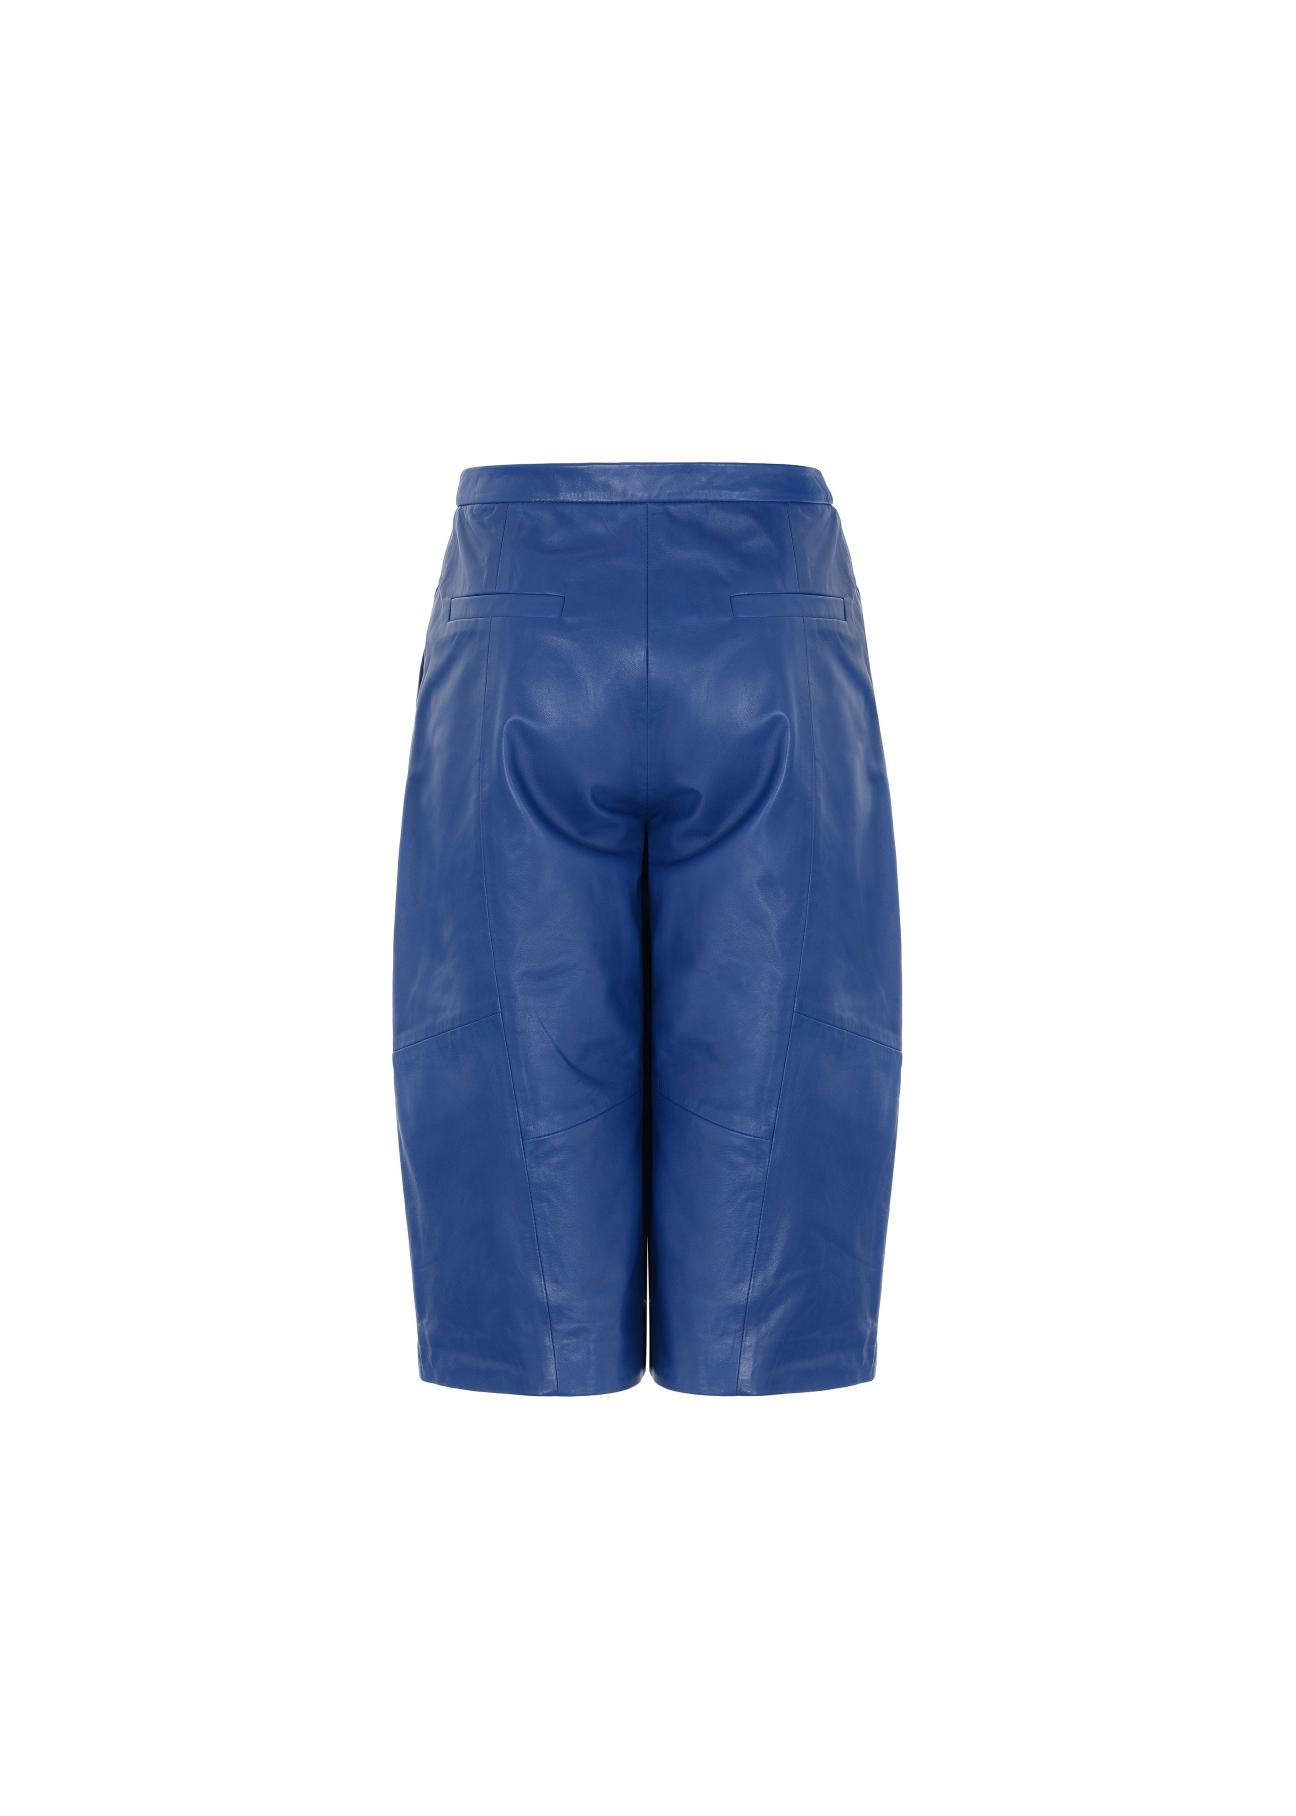 Niebieskie skórzane krótkie spodnie damskie SPODS-0016-5598(W20)